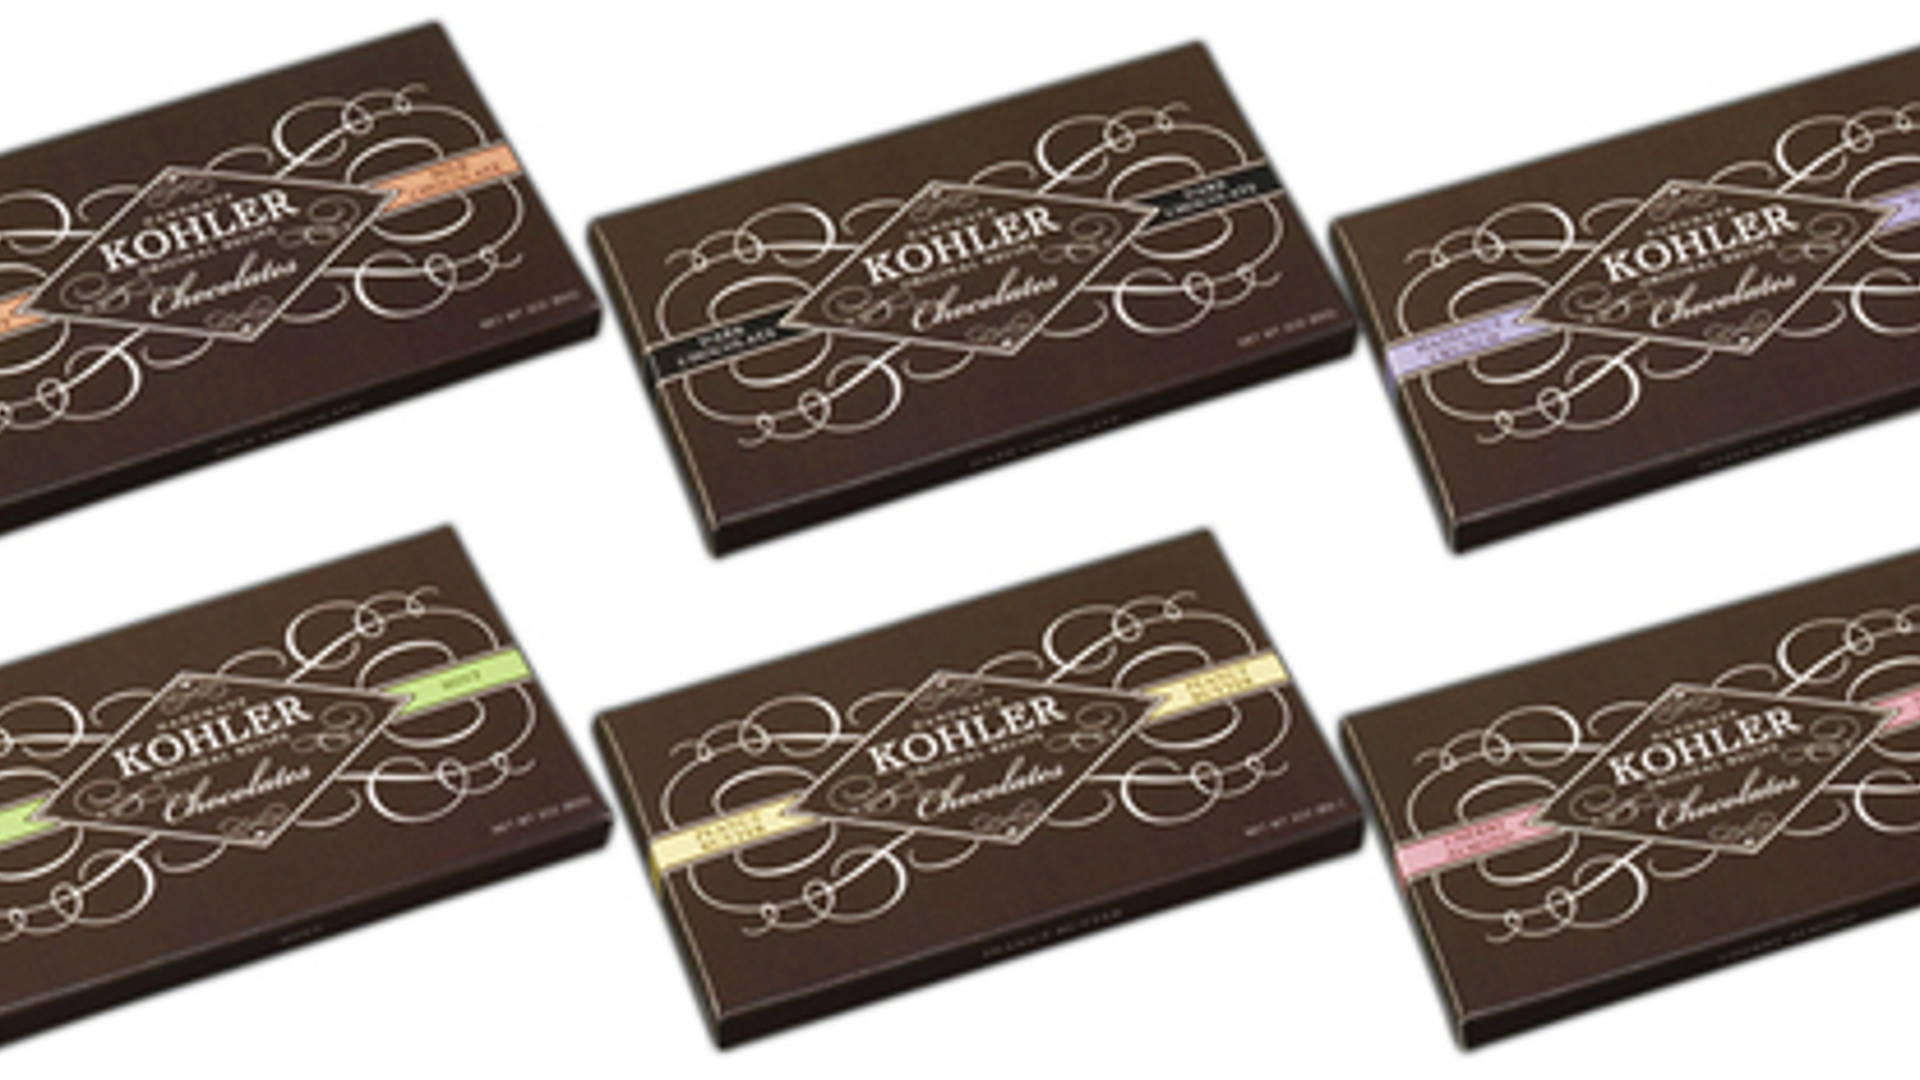 Featured image for Kohler Chocolates